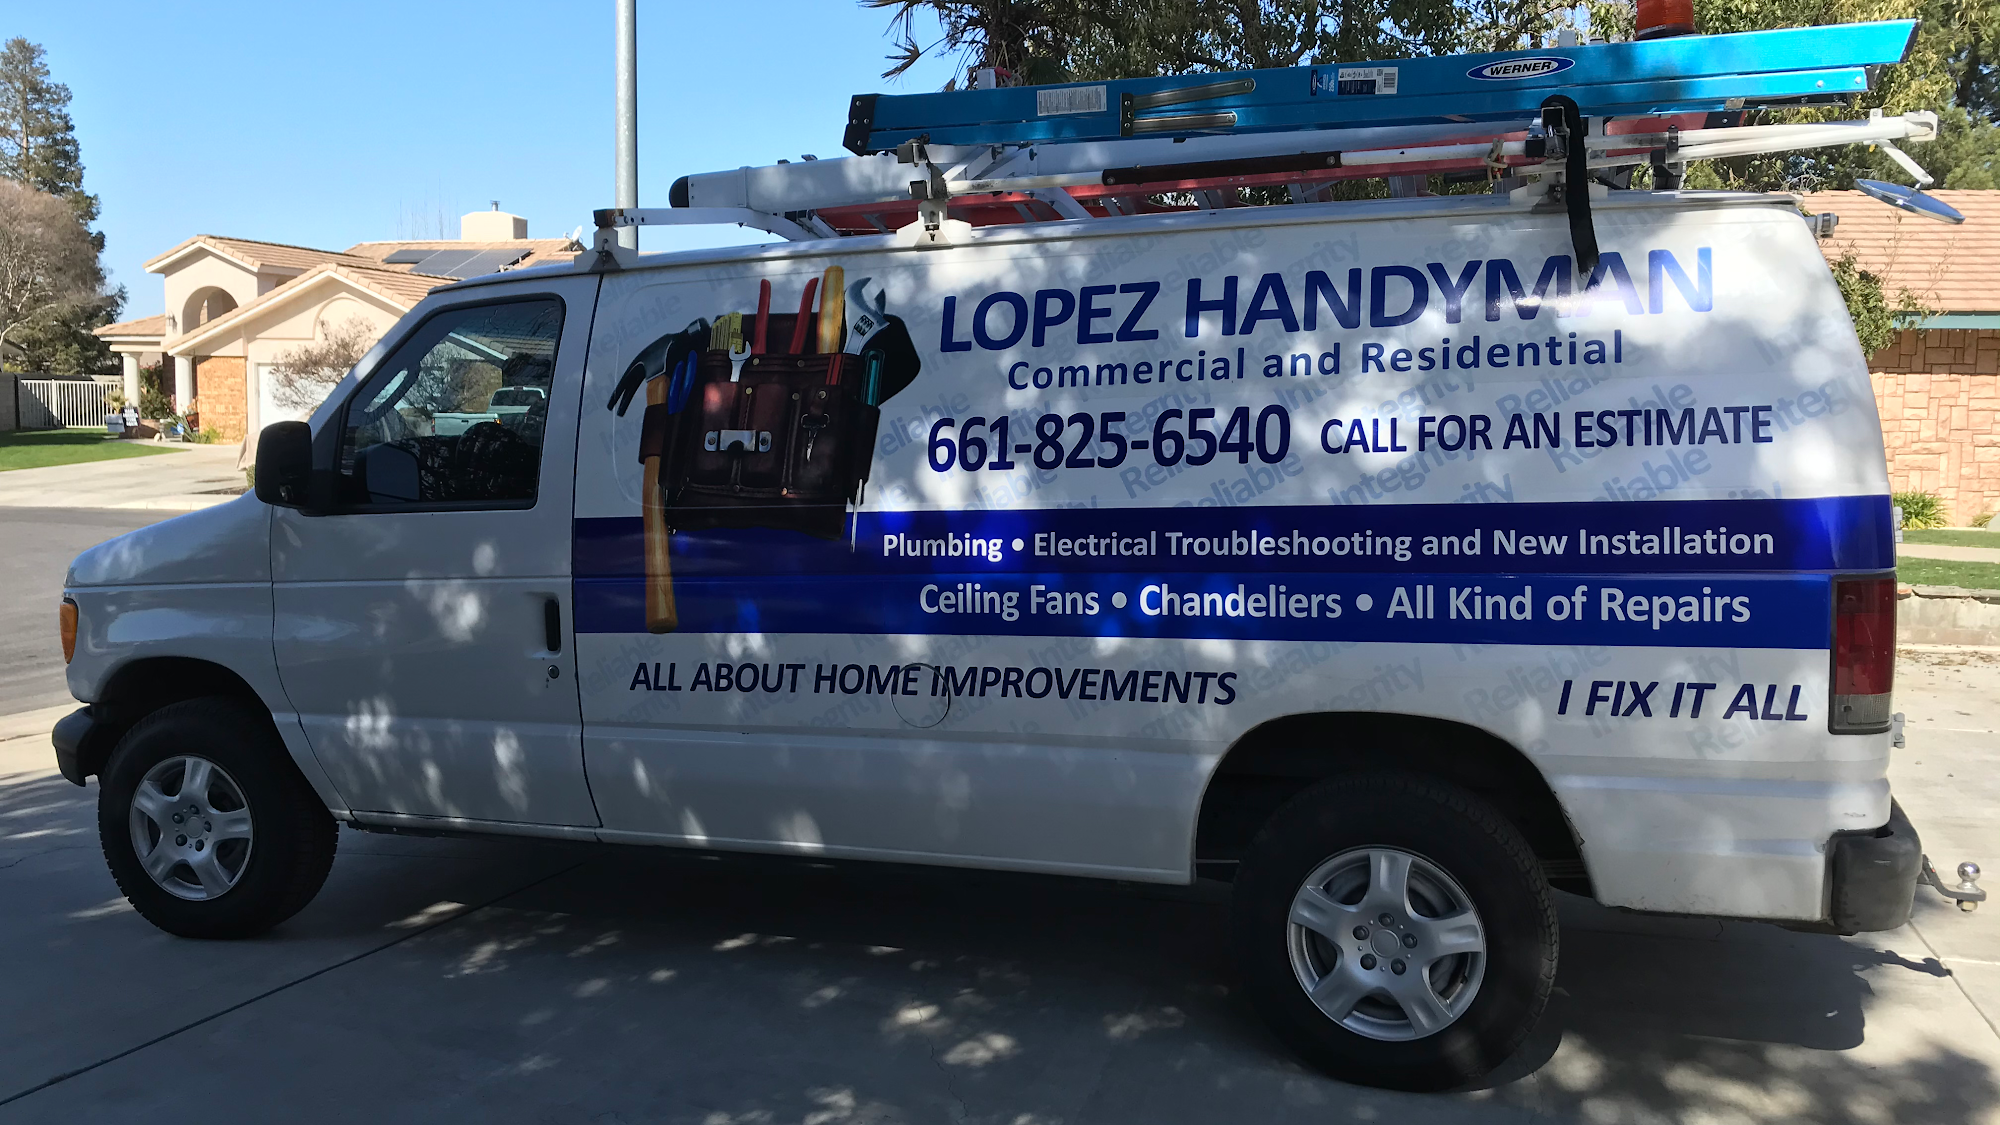 Lopez Handyman